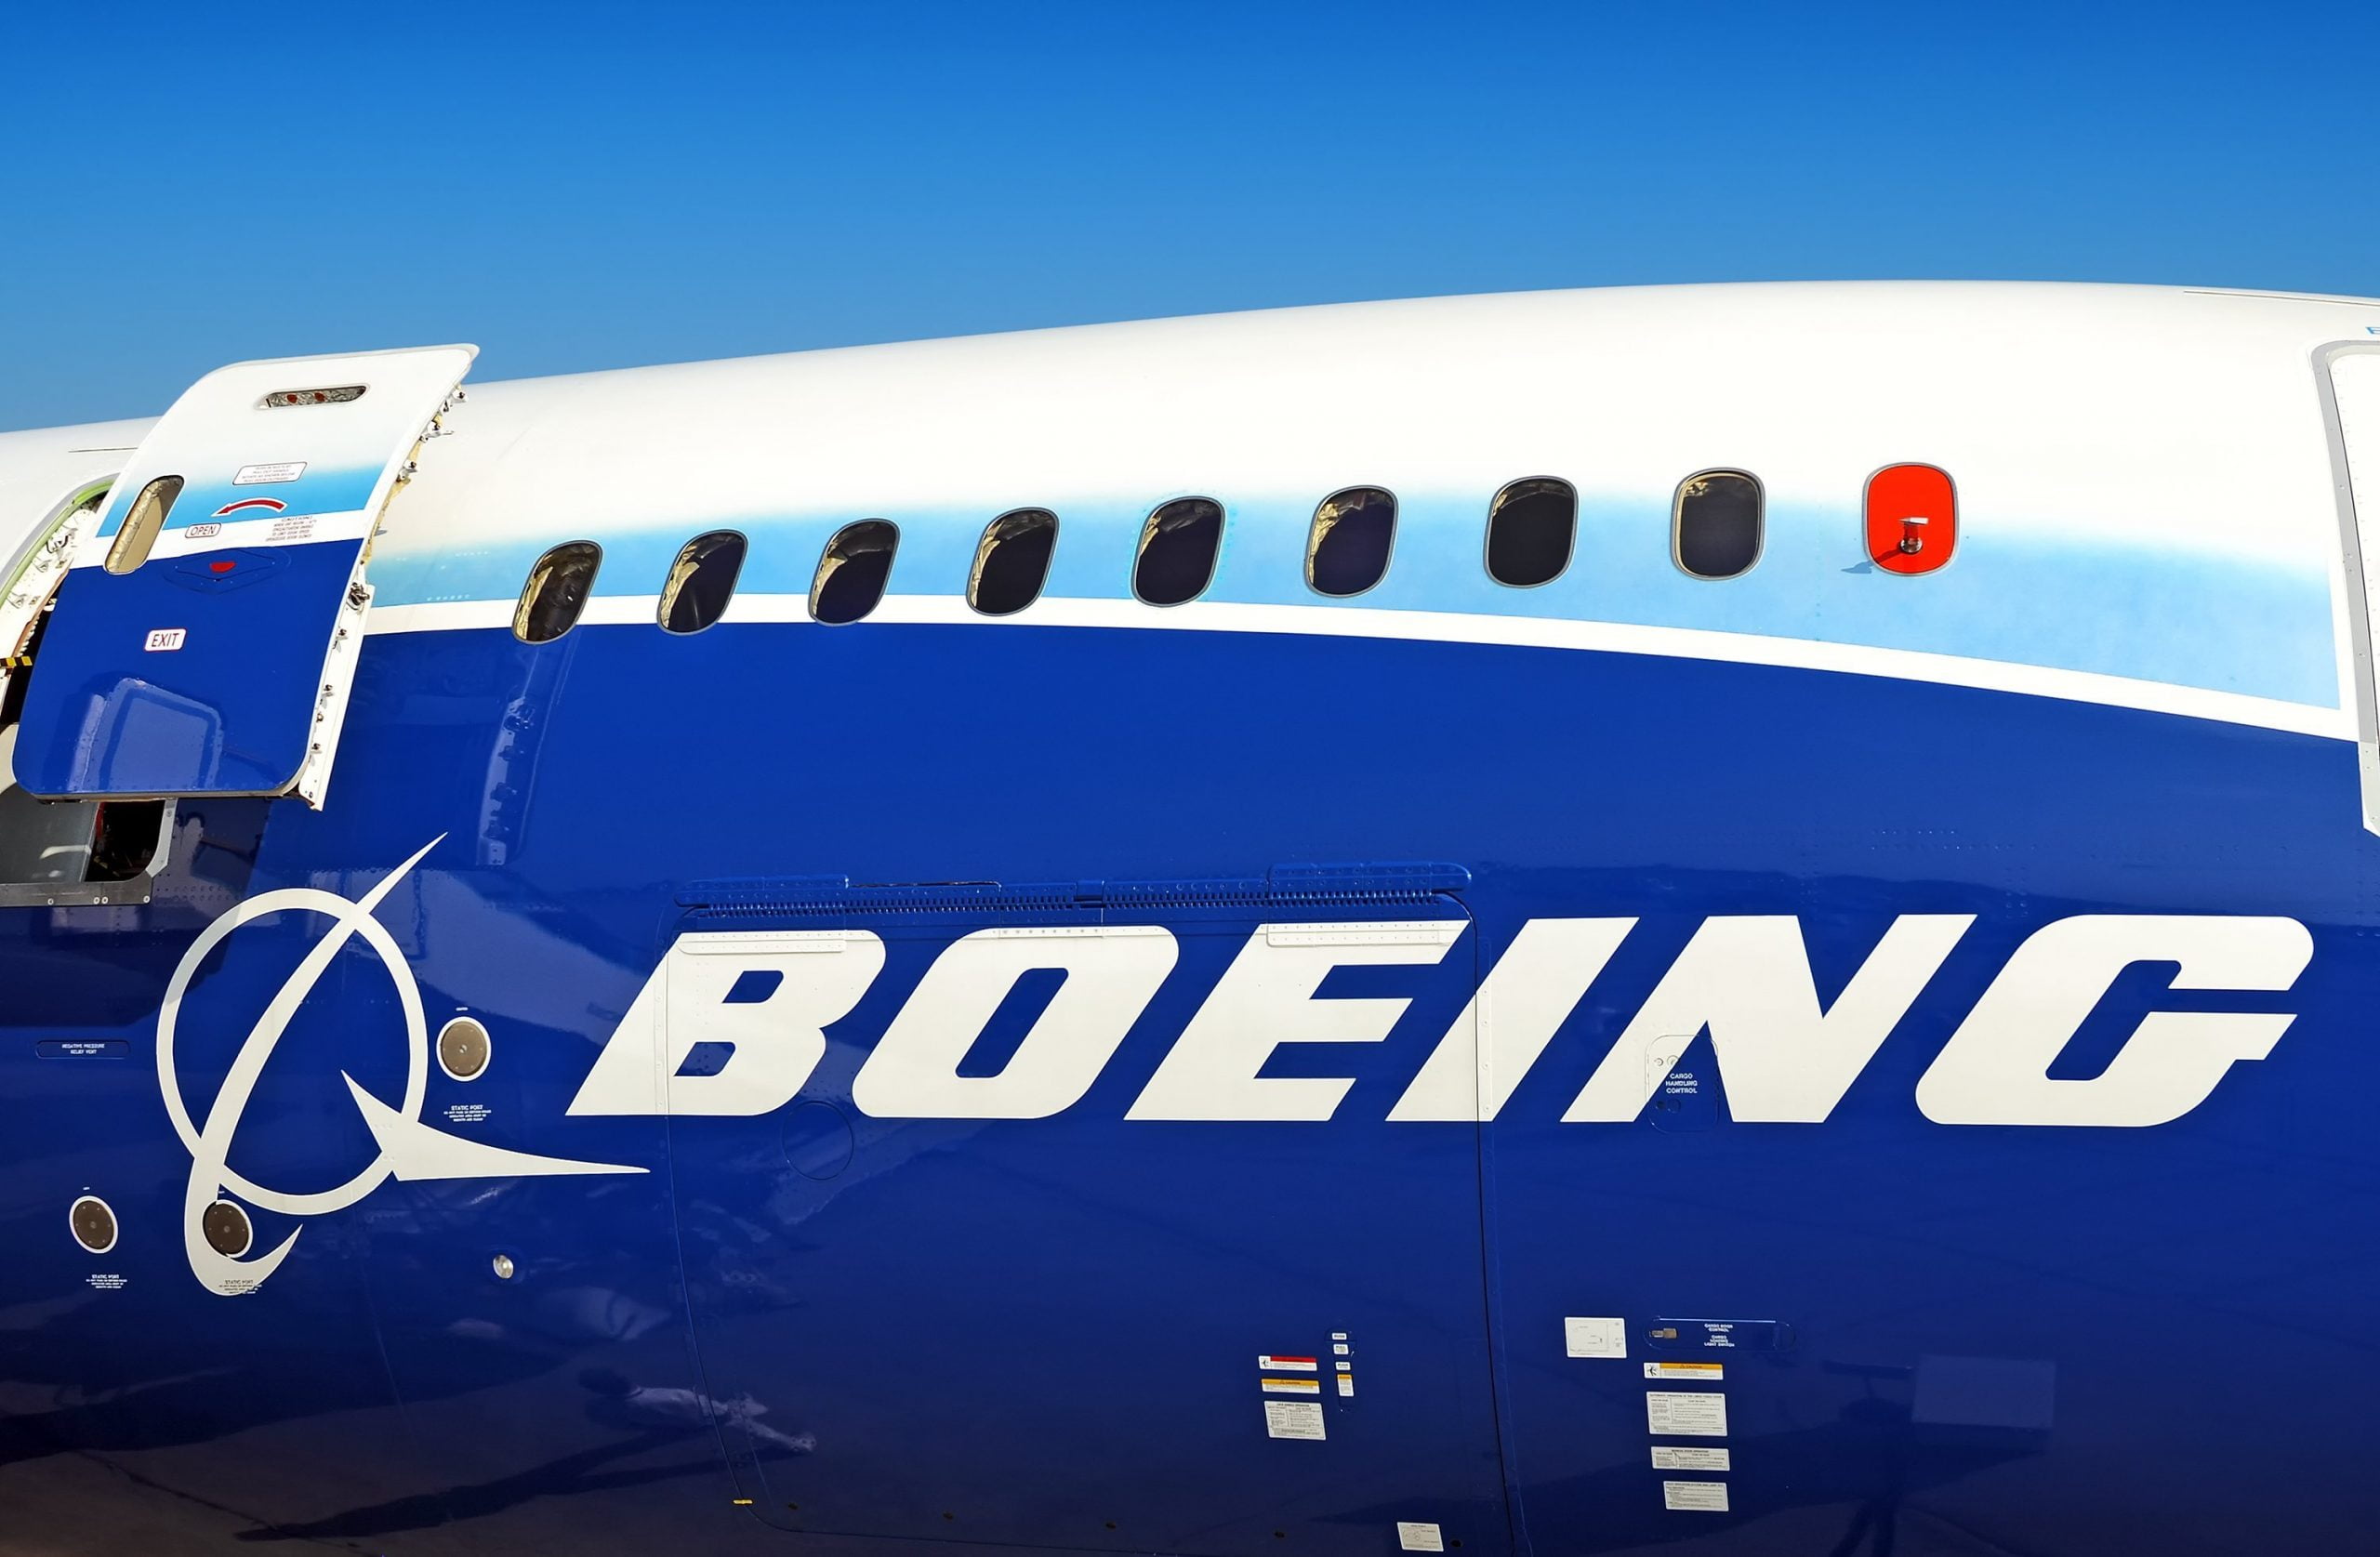 Corona-krisen forårsager masseudladning hos Boeing